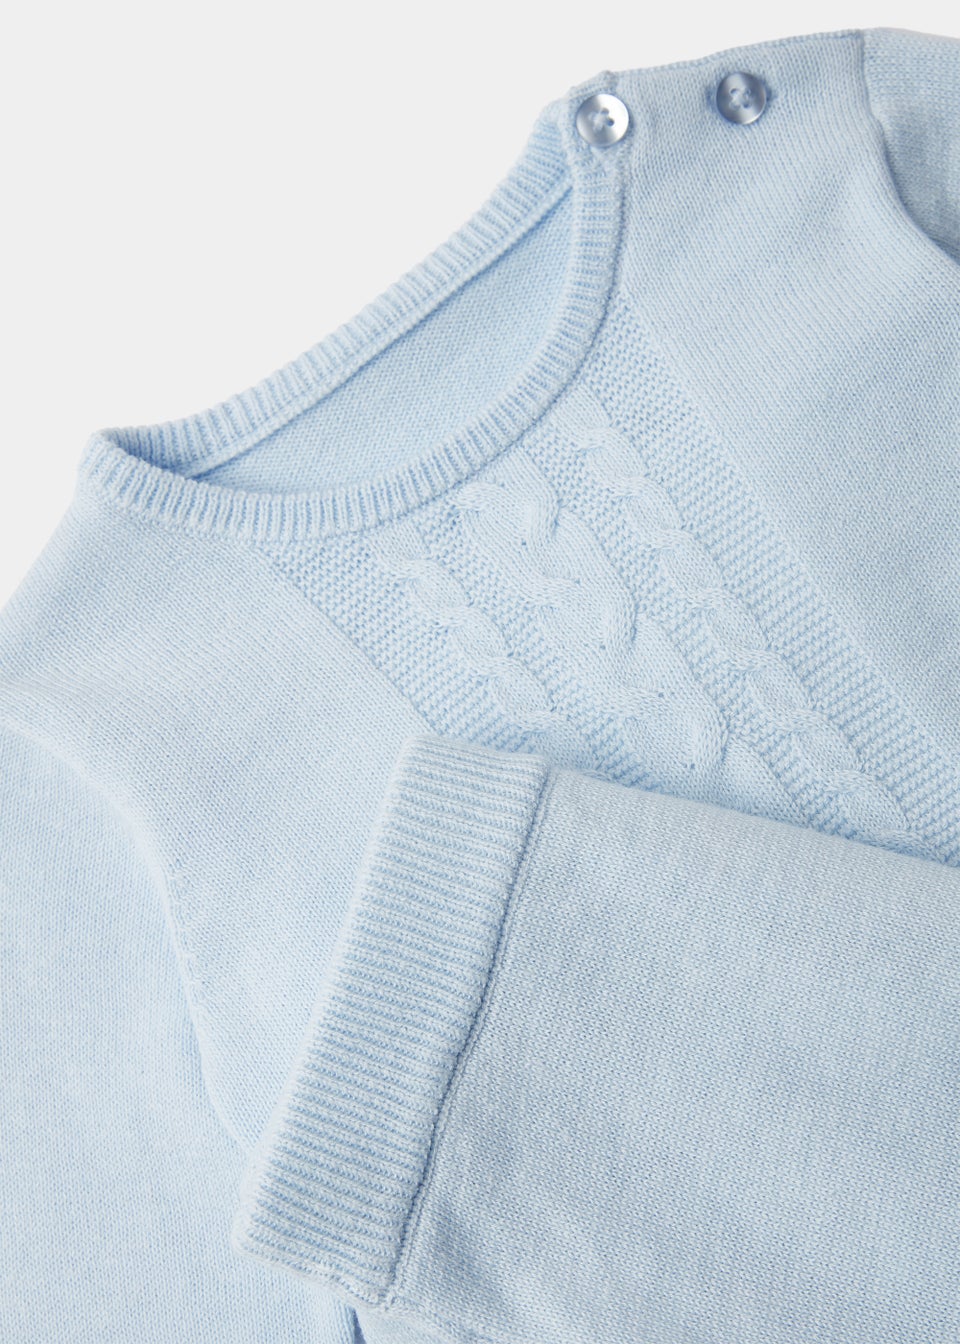 Baby 2 Piece Blue Layette Knitted Set (Newborn-12mths)